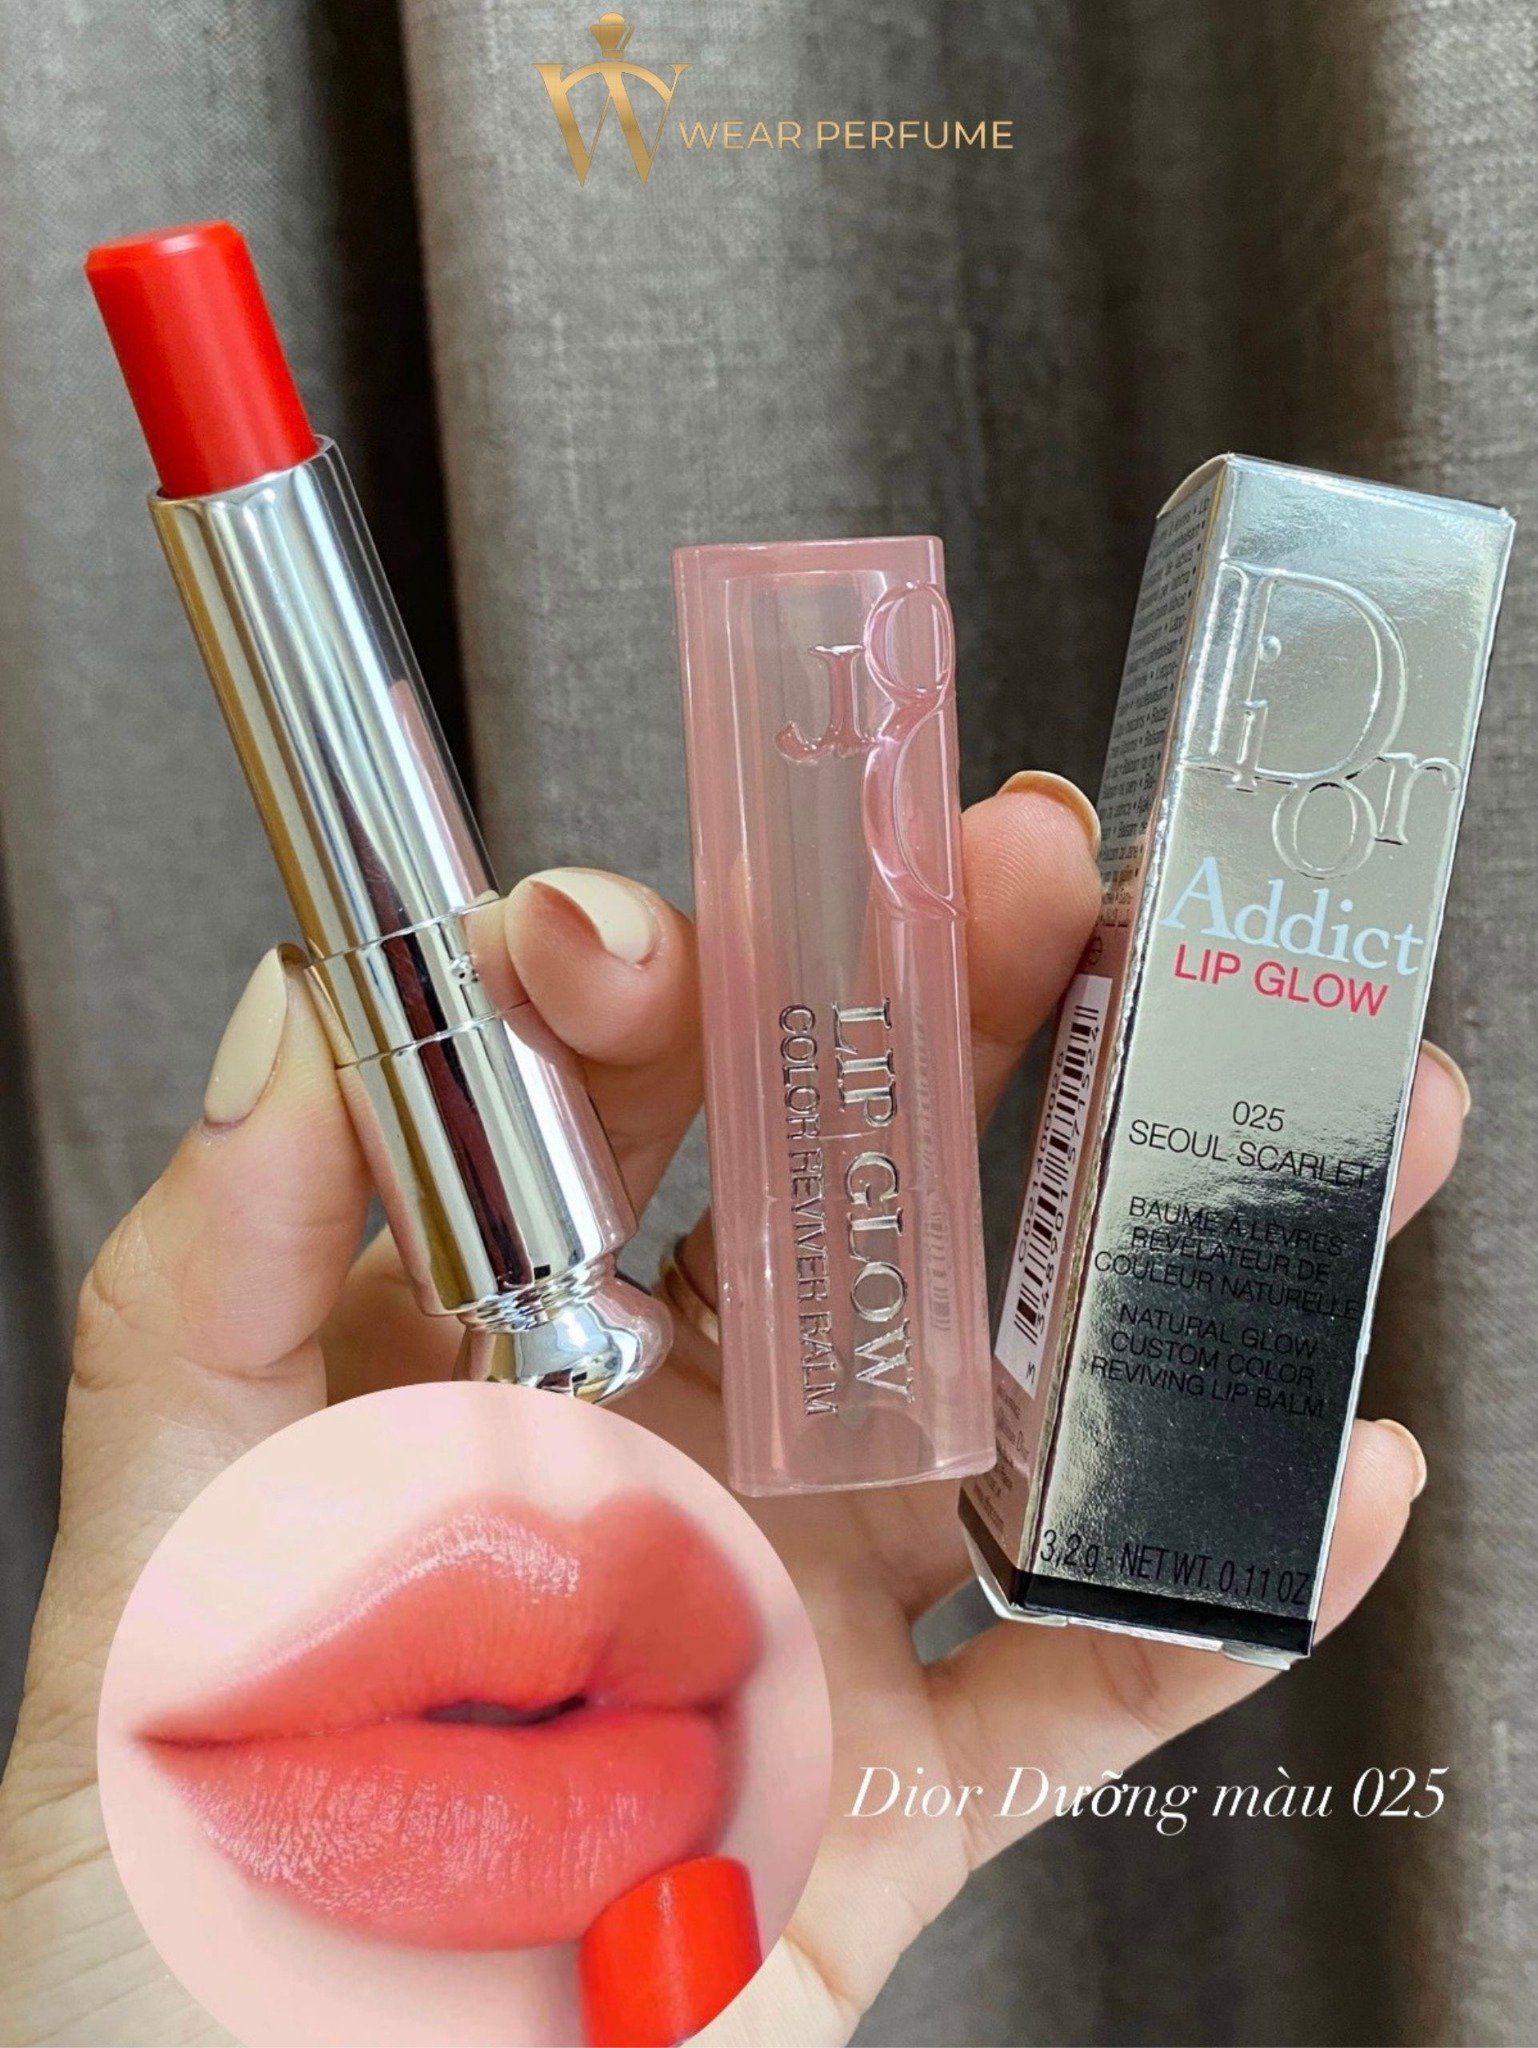 Son Dưỡng Dior Addict Lip Glow bản mới 2021  màu 025 màu Seoul Scarlet đỏ  cam   Shopee Việt Nam